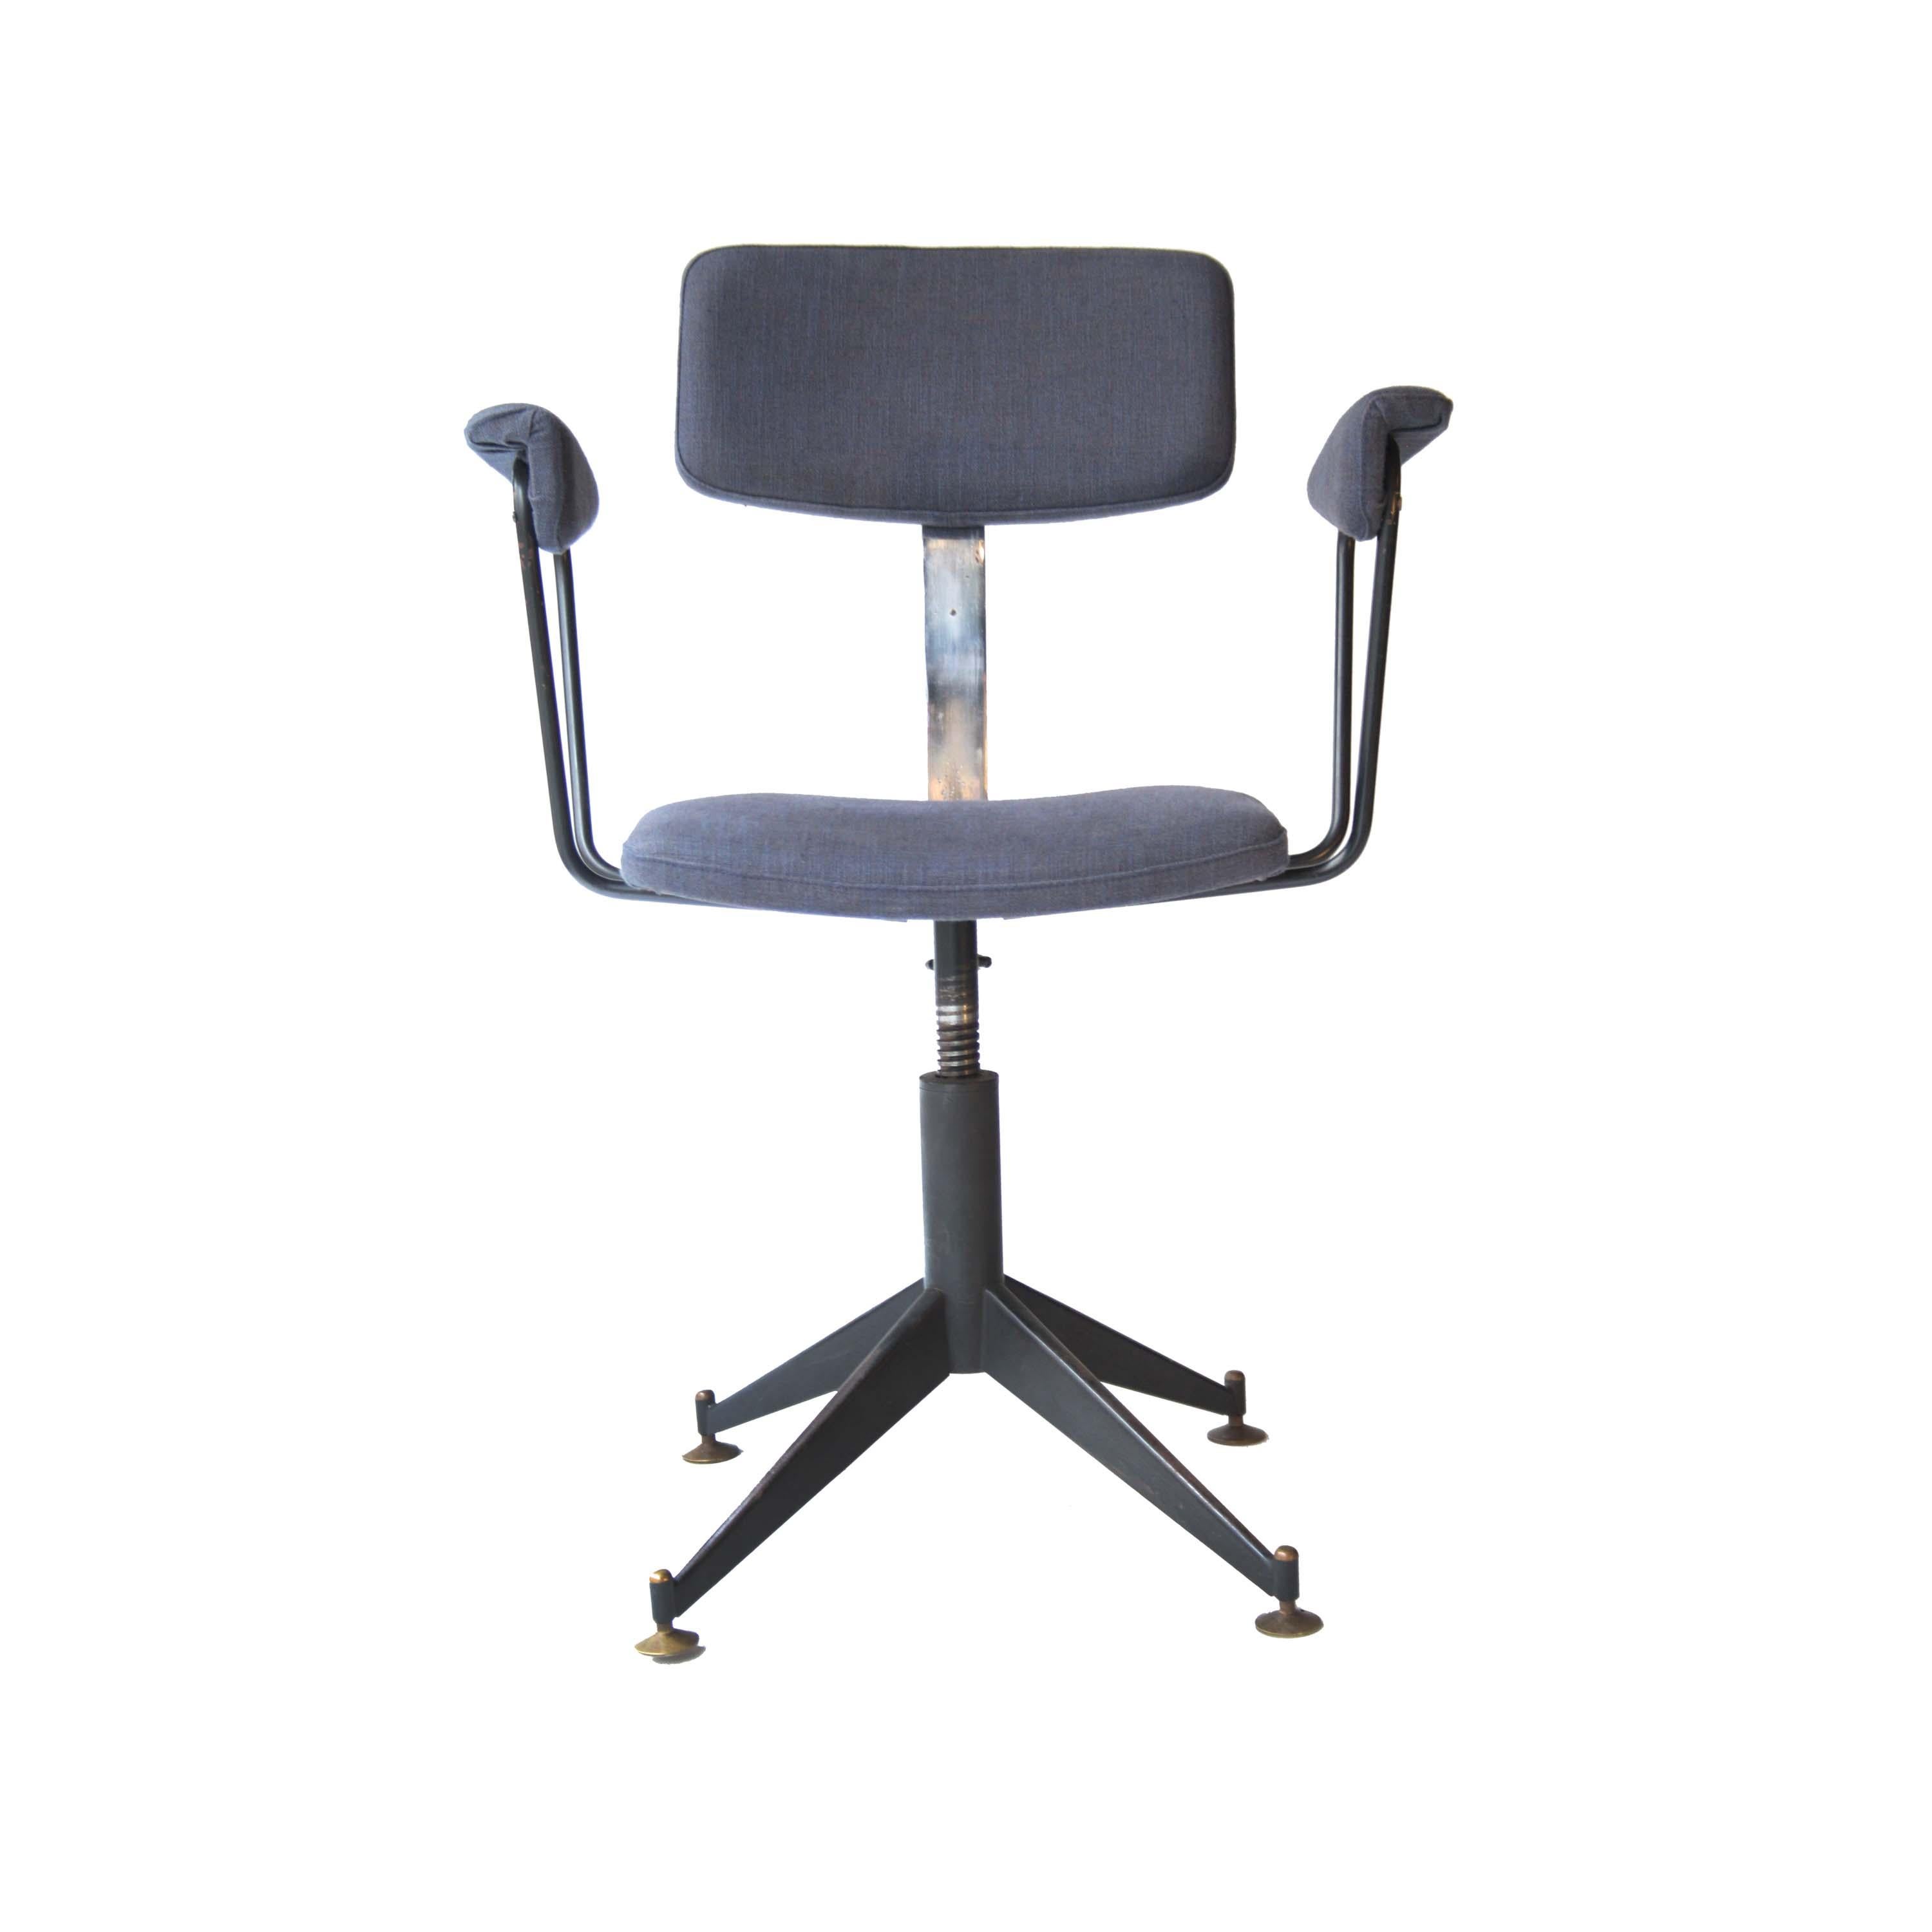 Sessel mit schwarz lackiertem Metallgestell. Sitz und Armlehnen sind mit Baumwoll-Melacron gepolstert, die Füße sind mit Messingpads versehen.